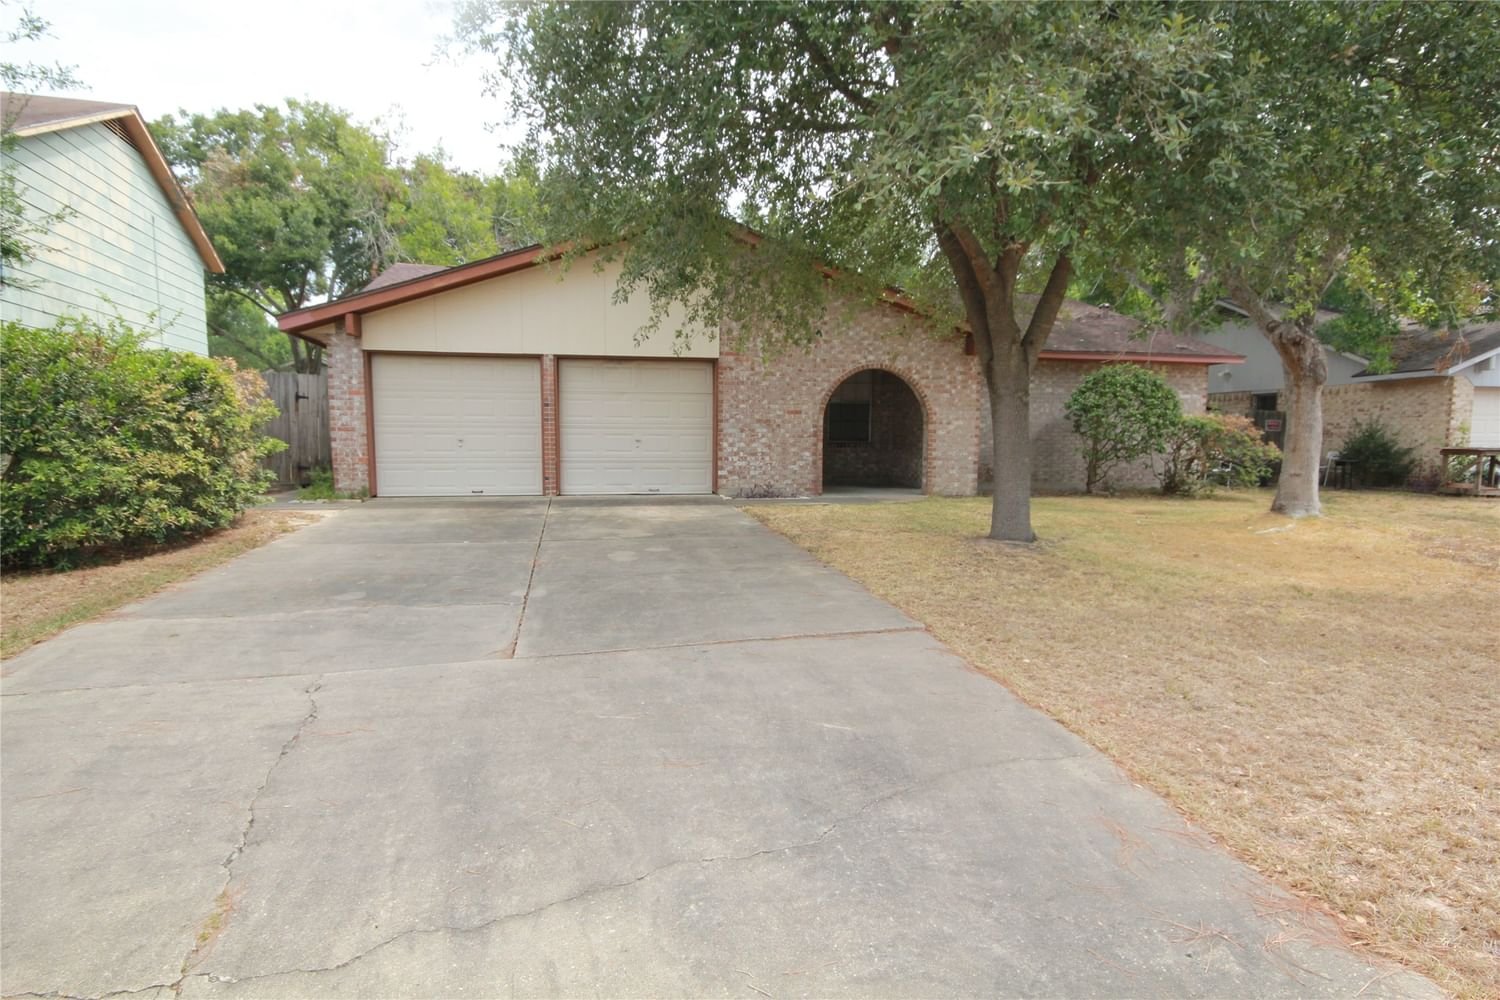 Real estate property located at 2110 Westlake, Harris, Westlake Sec 01, Houston, TX, US